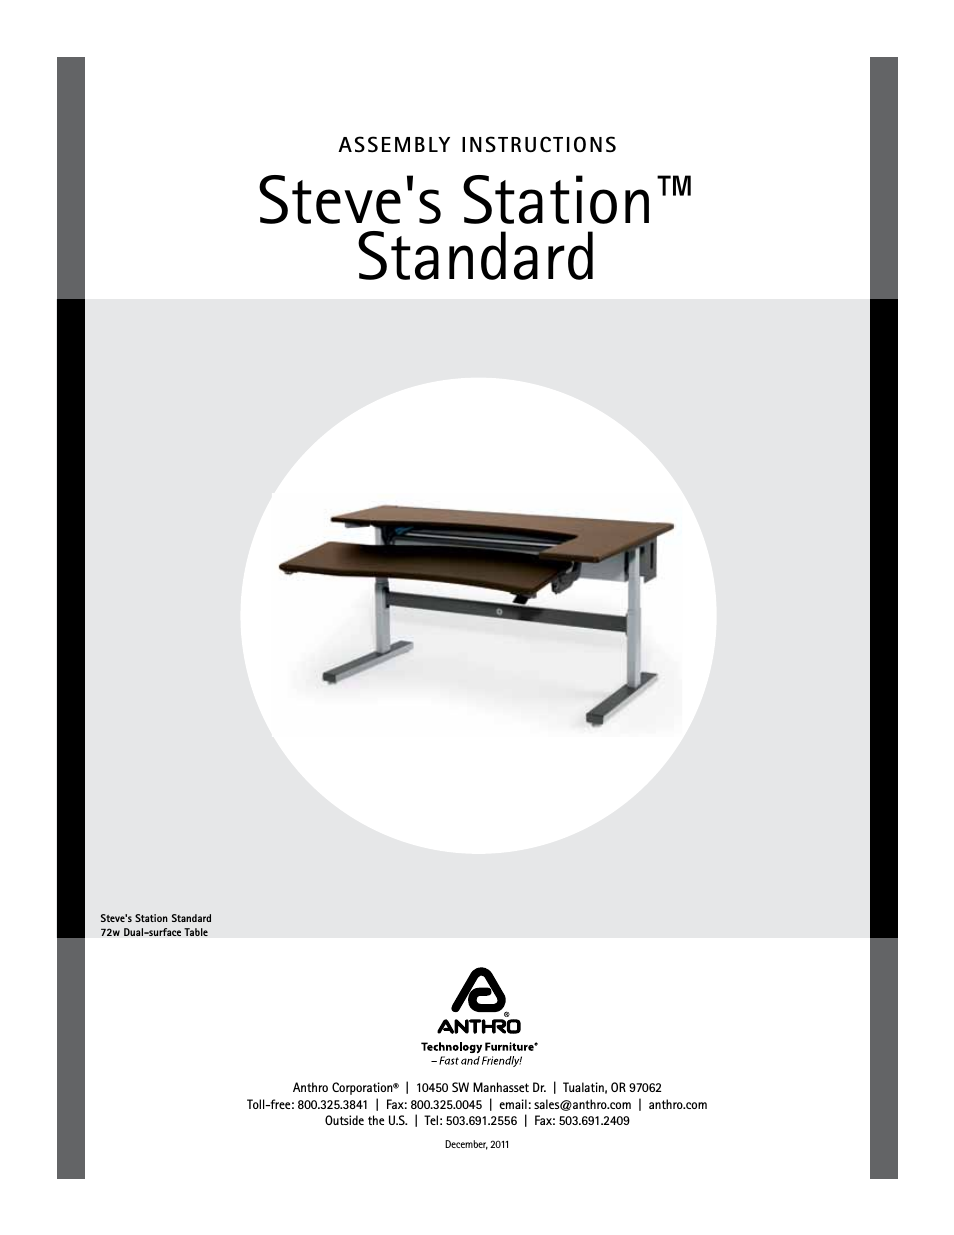 Steve’s Station Office Assembly Instructions